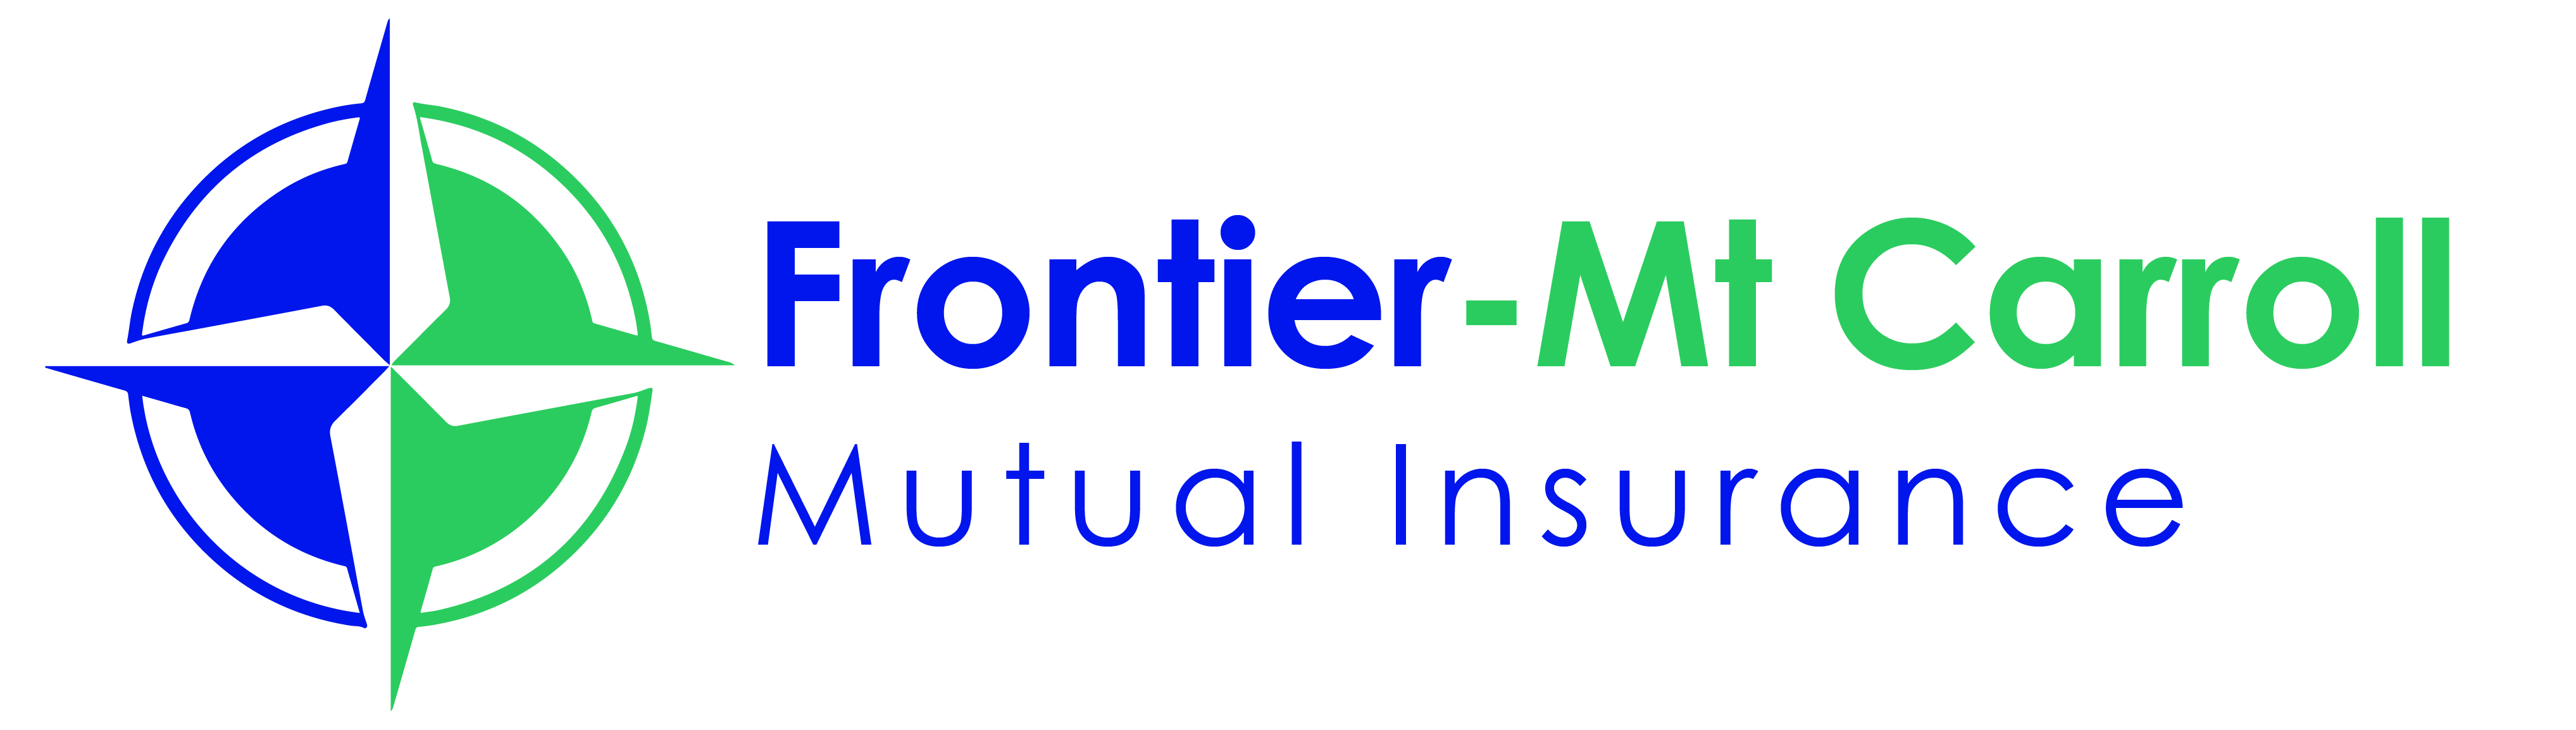 Frontier - Mt Carroll Logo